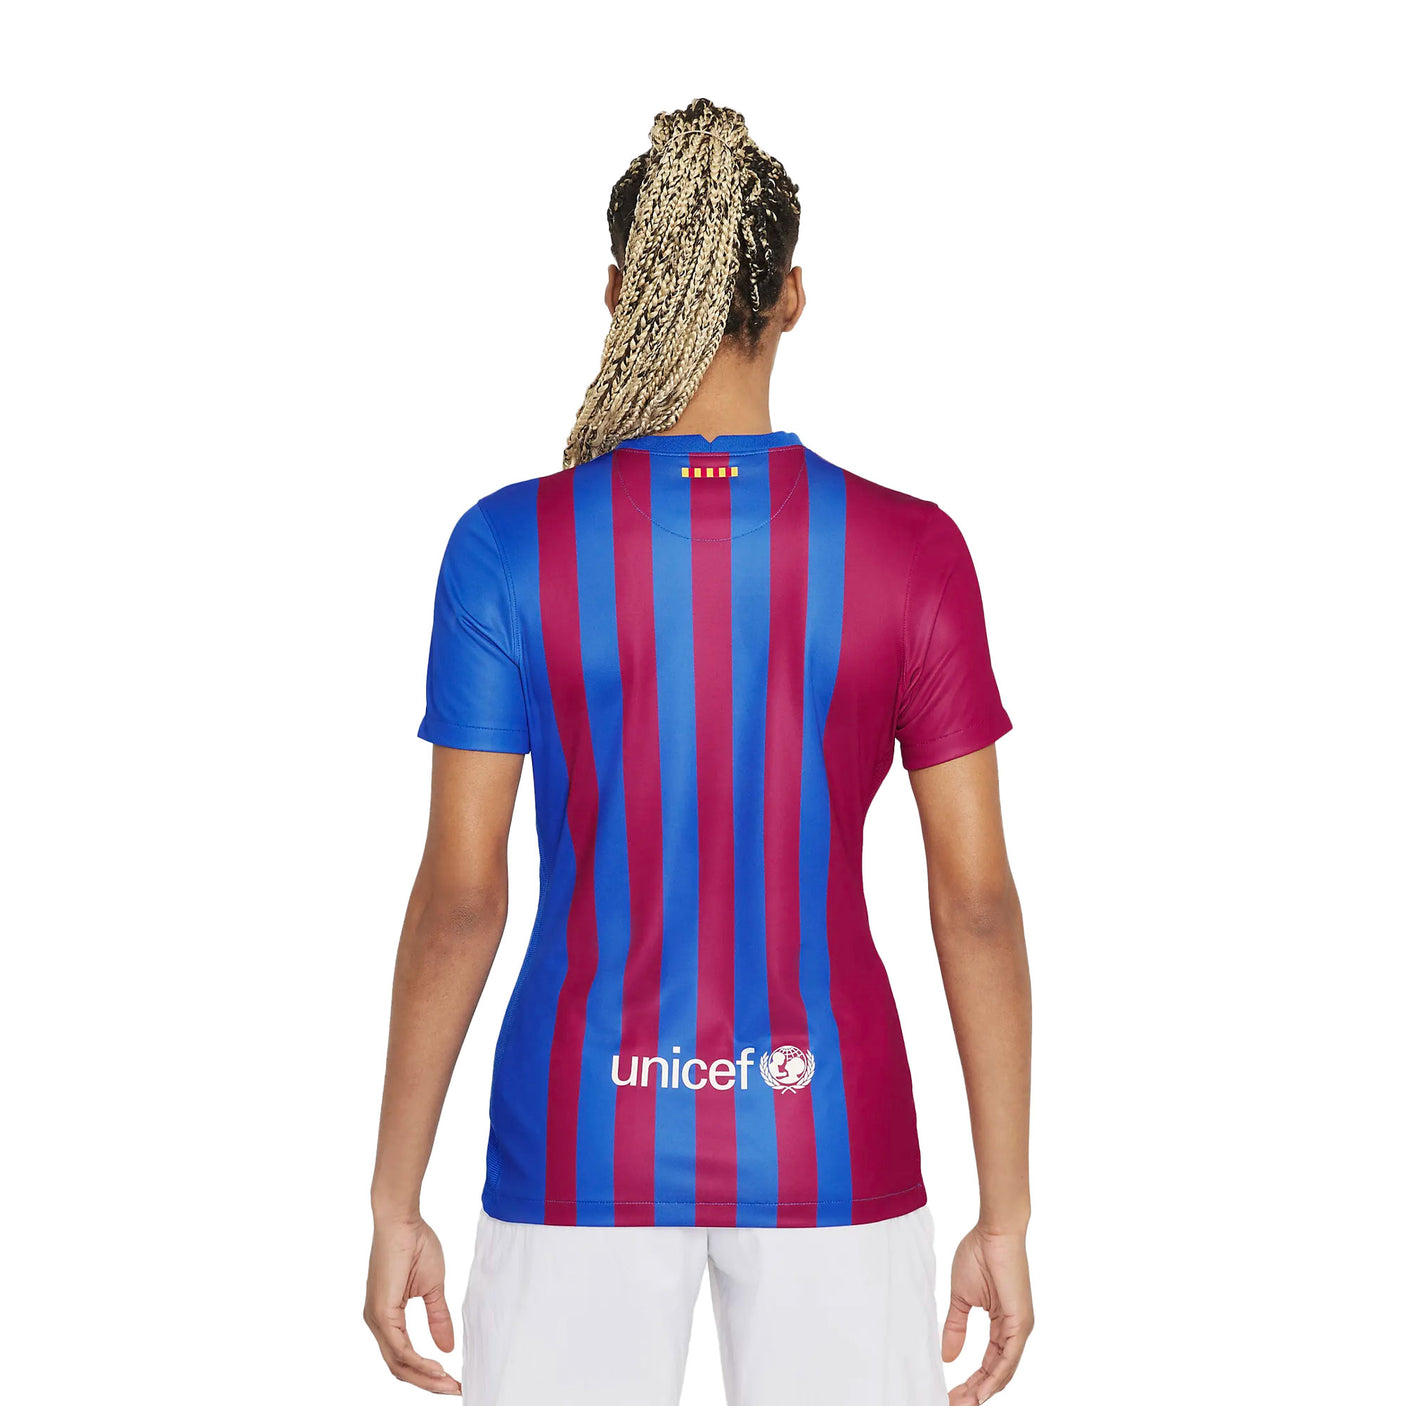 Nike Women's FC Barcelona 2021/22 Home Jersey Soar/Pale Ivory Back Model